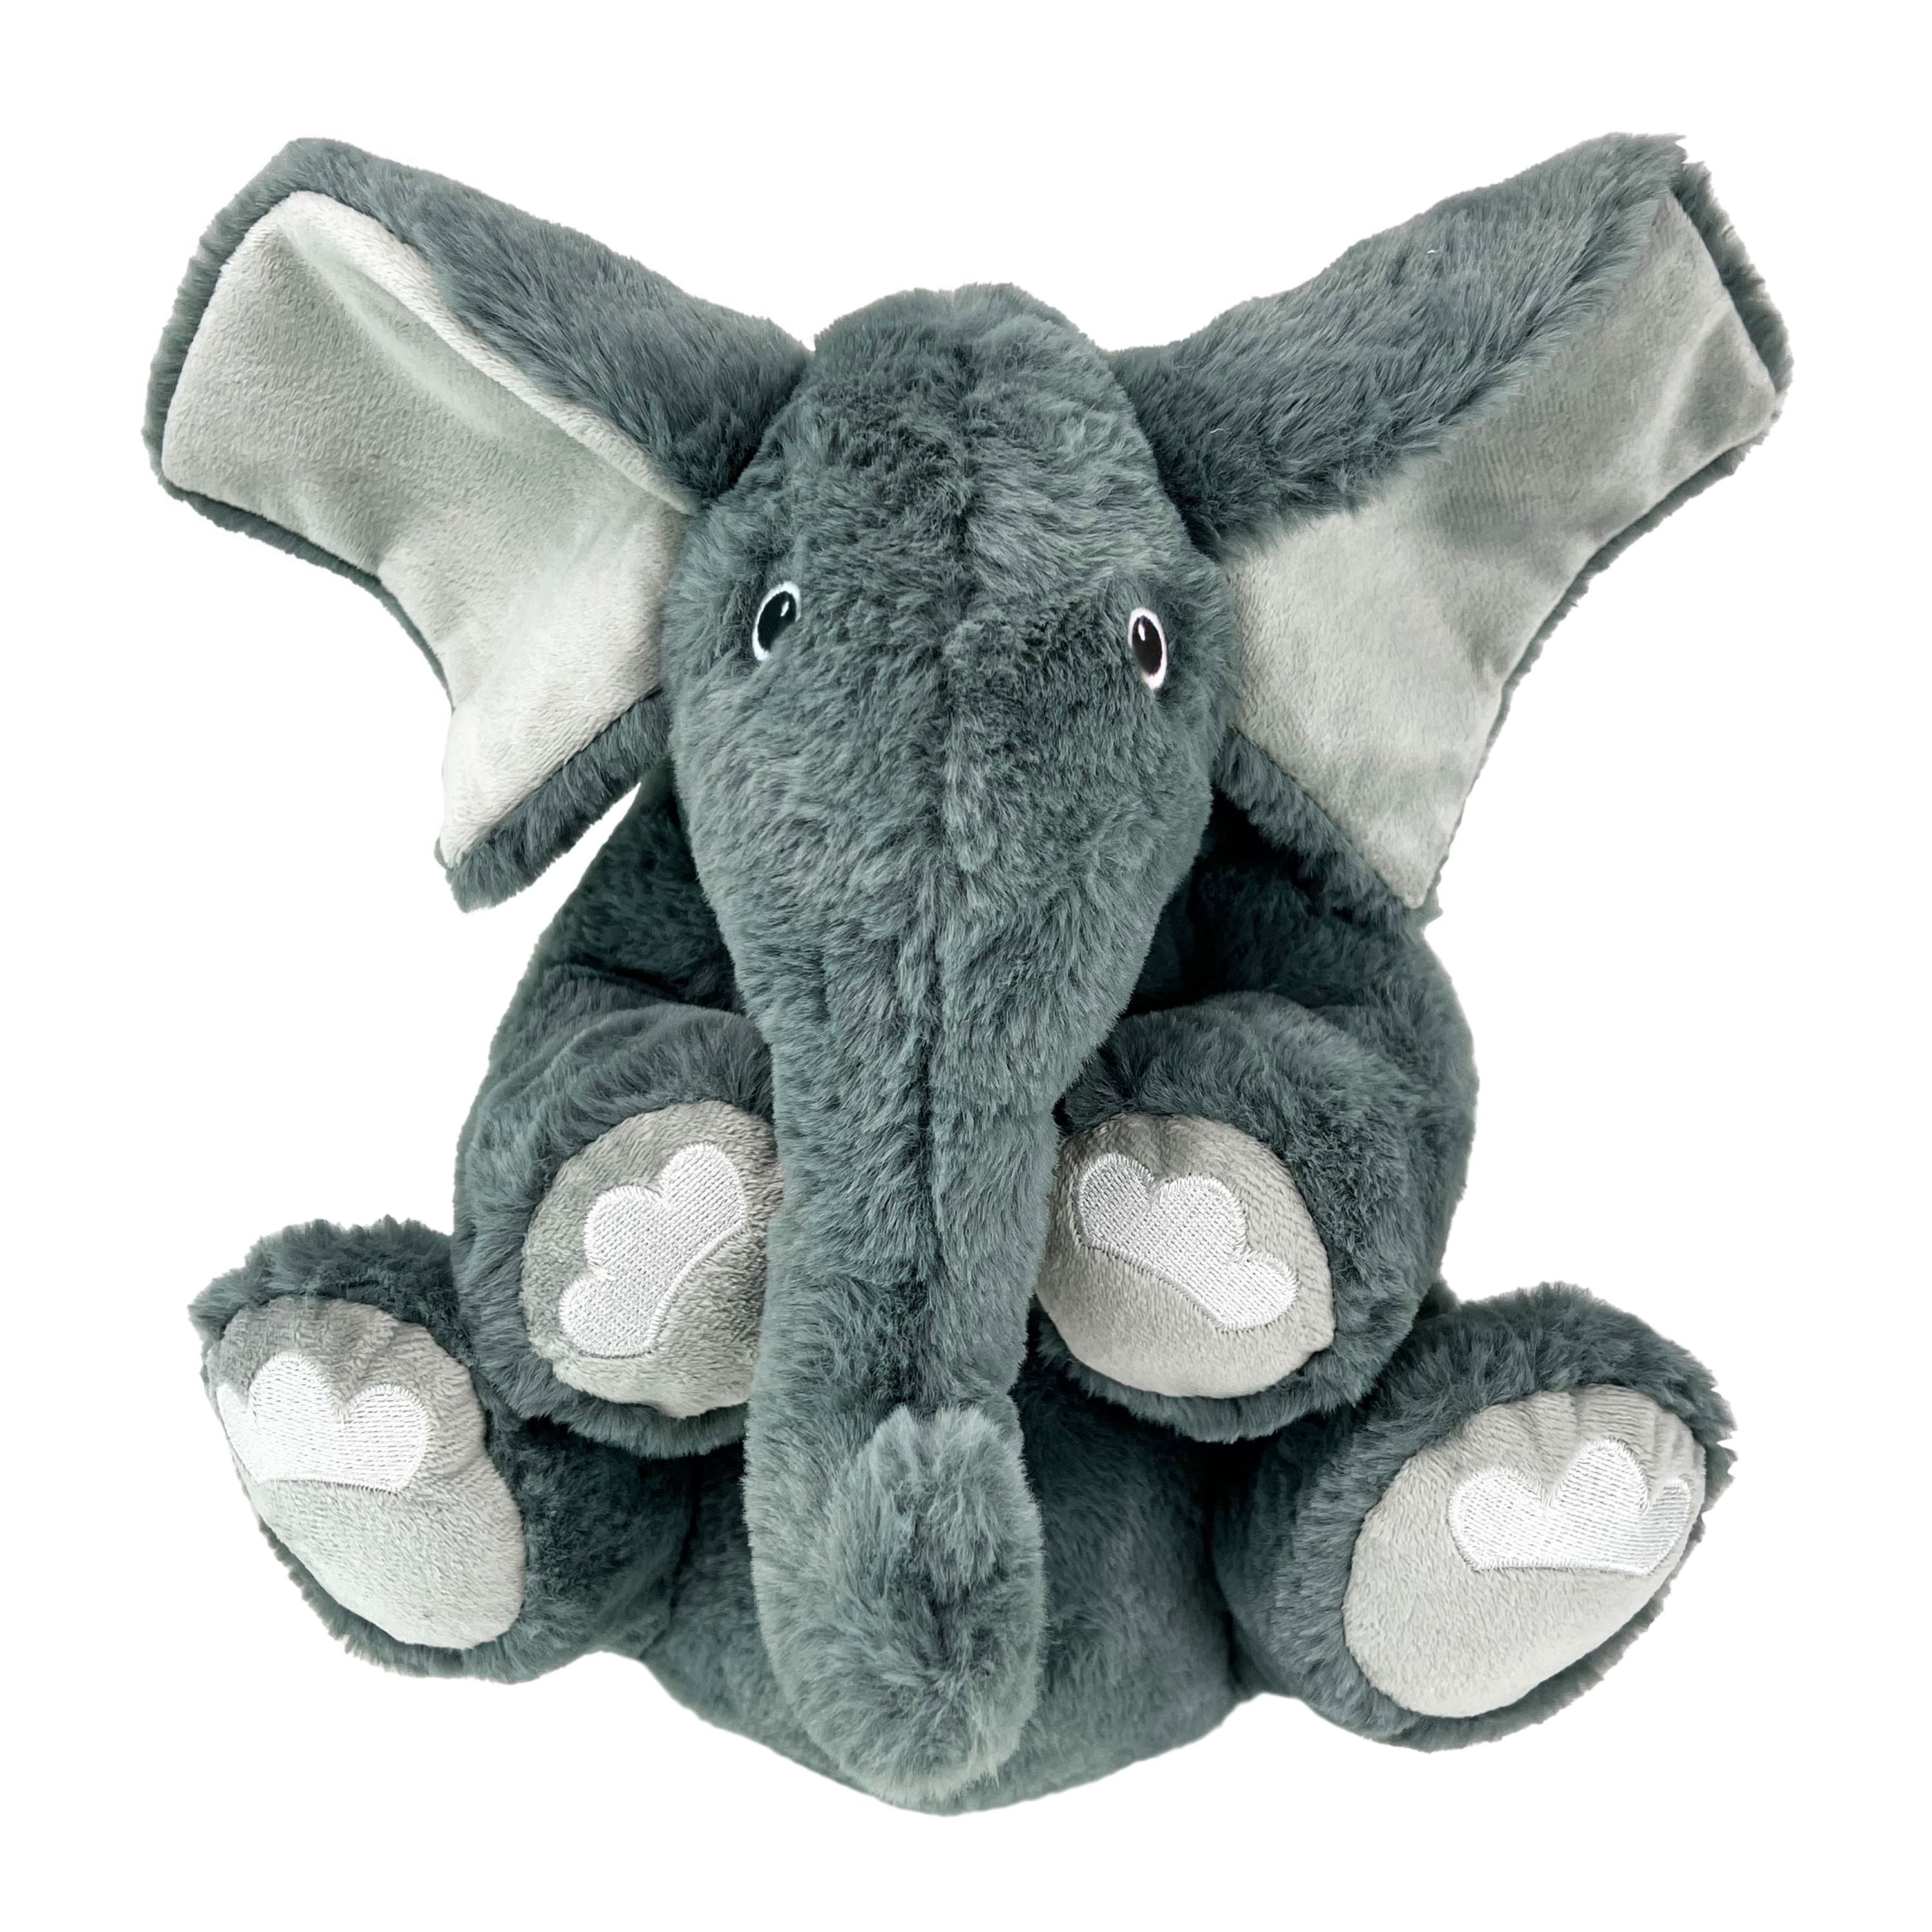 Comfort Kiddos Jumbo Elephant offpack product image